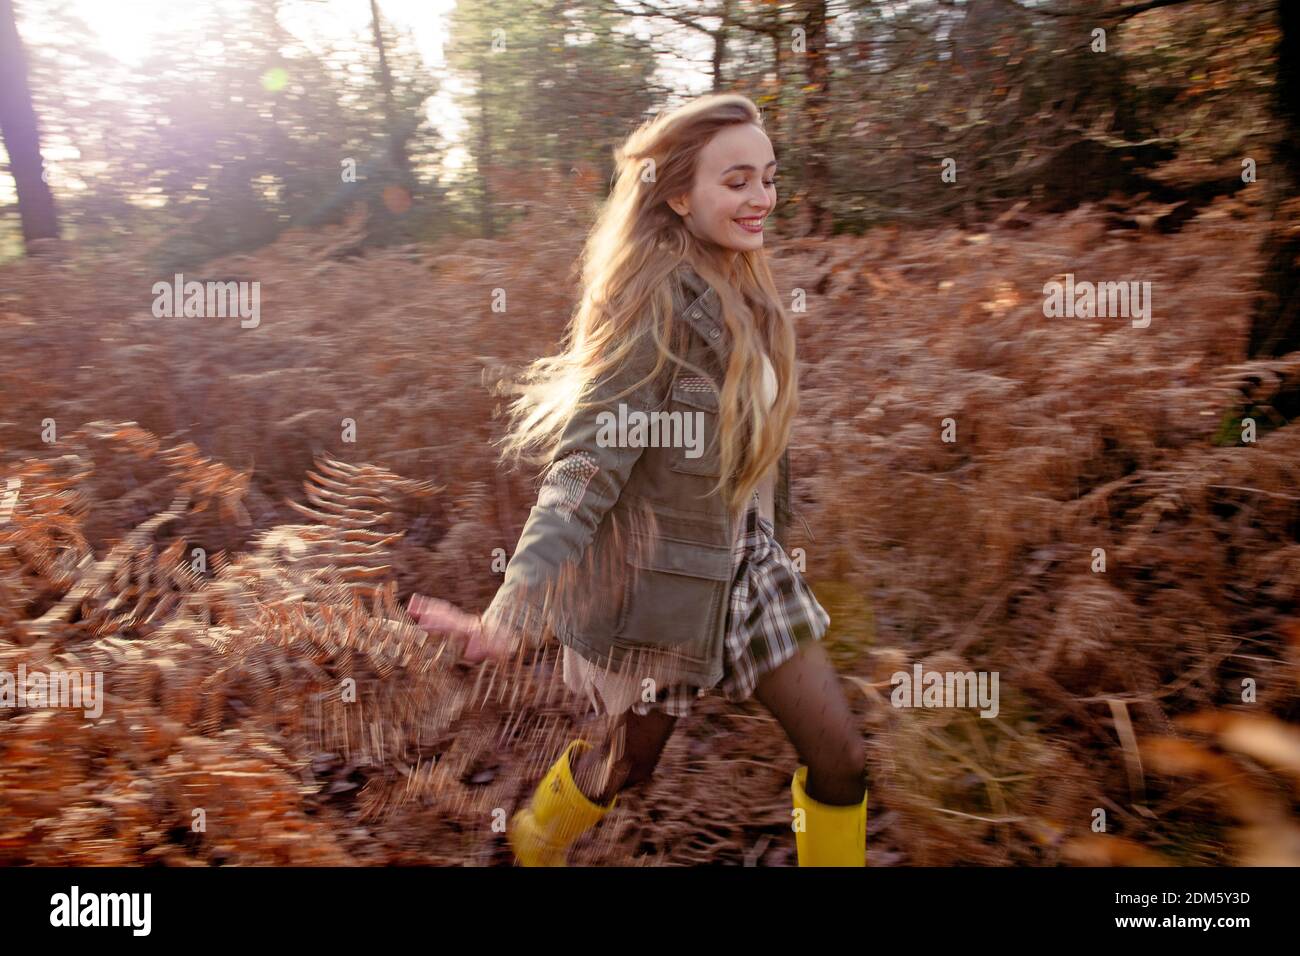 Una mujer joven y natural (20 años) corre por los helechos otoñales y se divierte en un entorno de bosque con una sensación de movimiento en un día soleado. Foto de stock